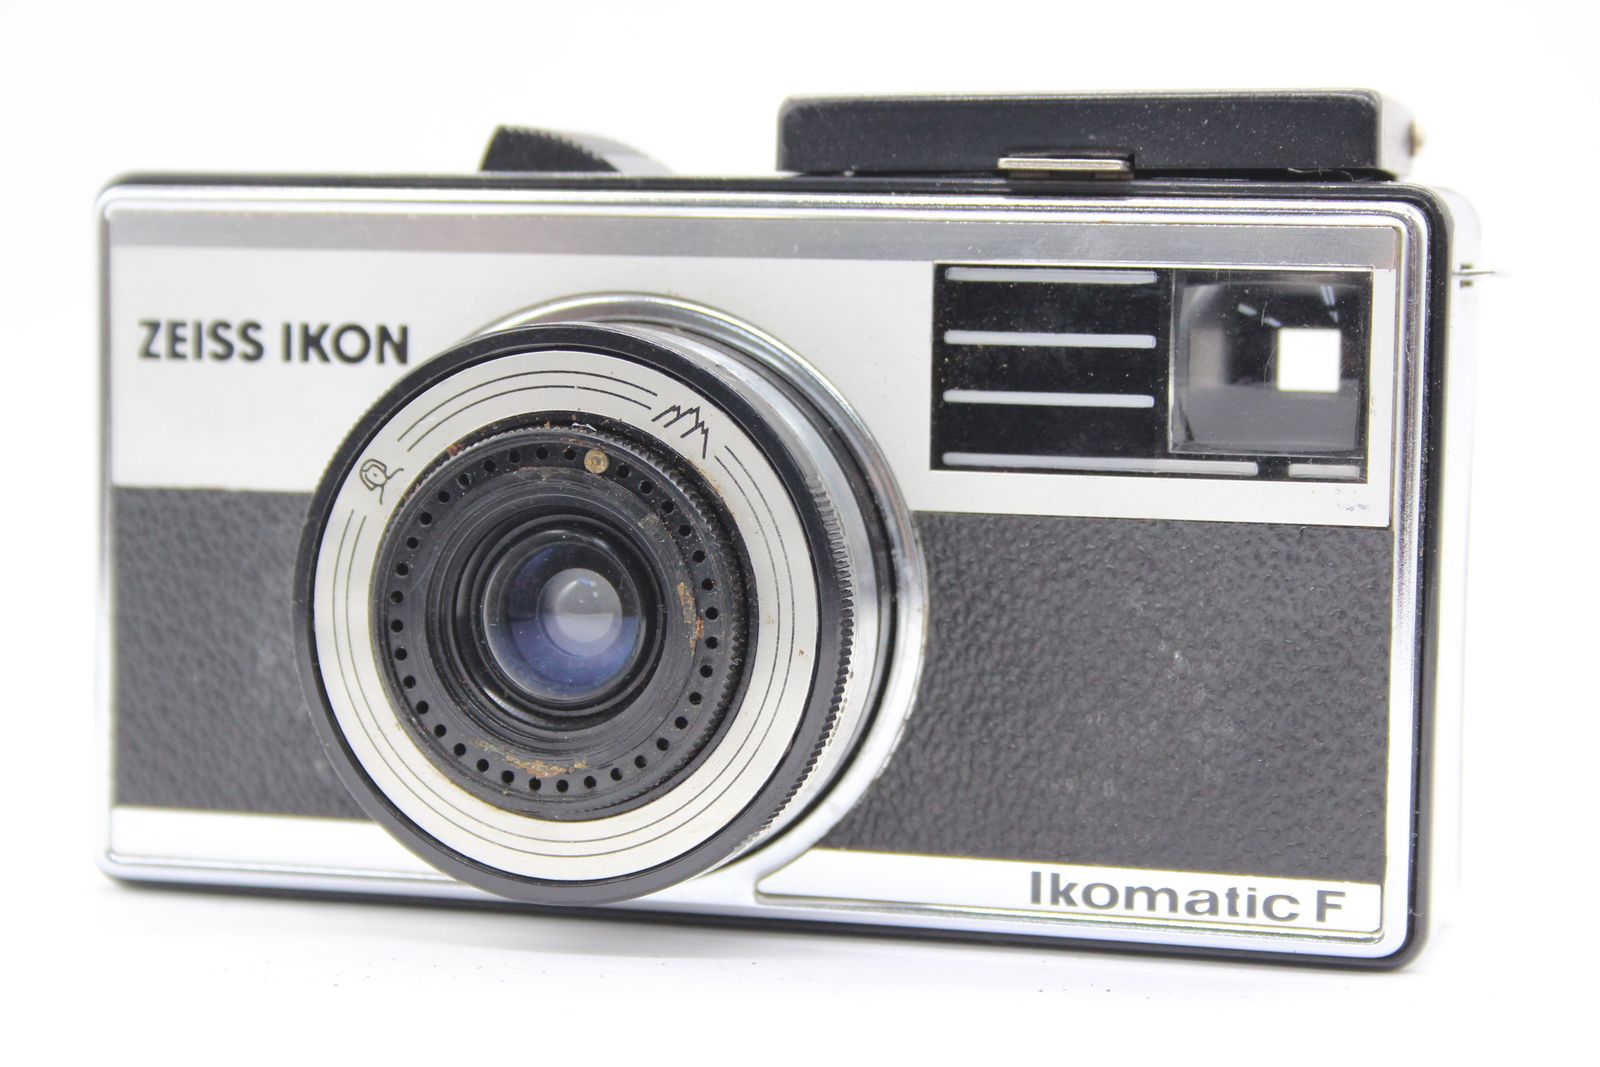 【訳あり品】 ツァイスイコン Zeiss Ikon Ikomatic F カメラ s5387